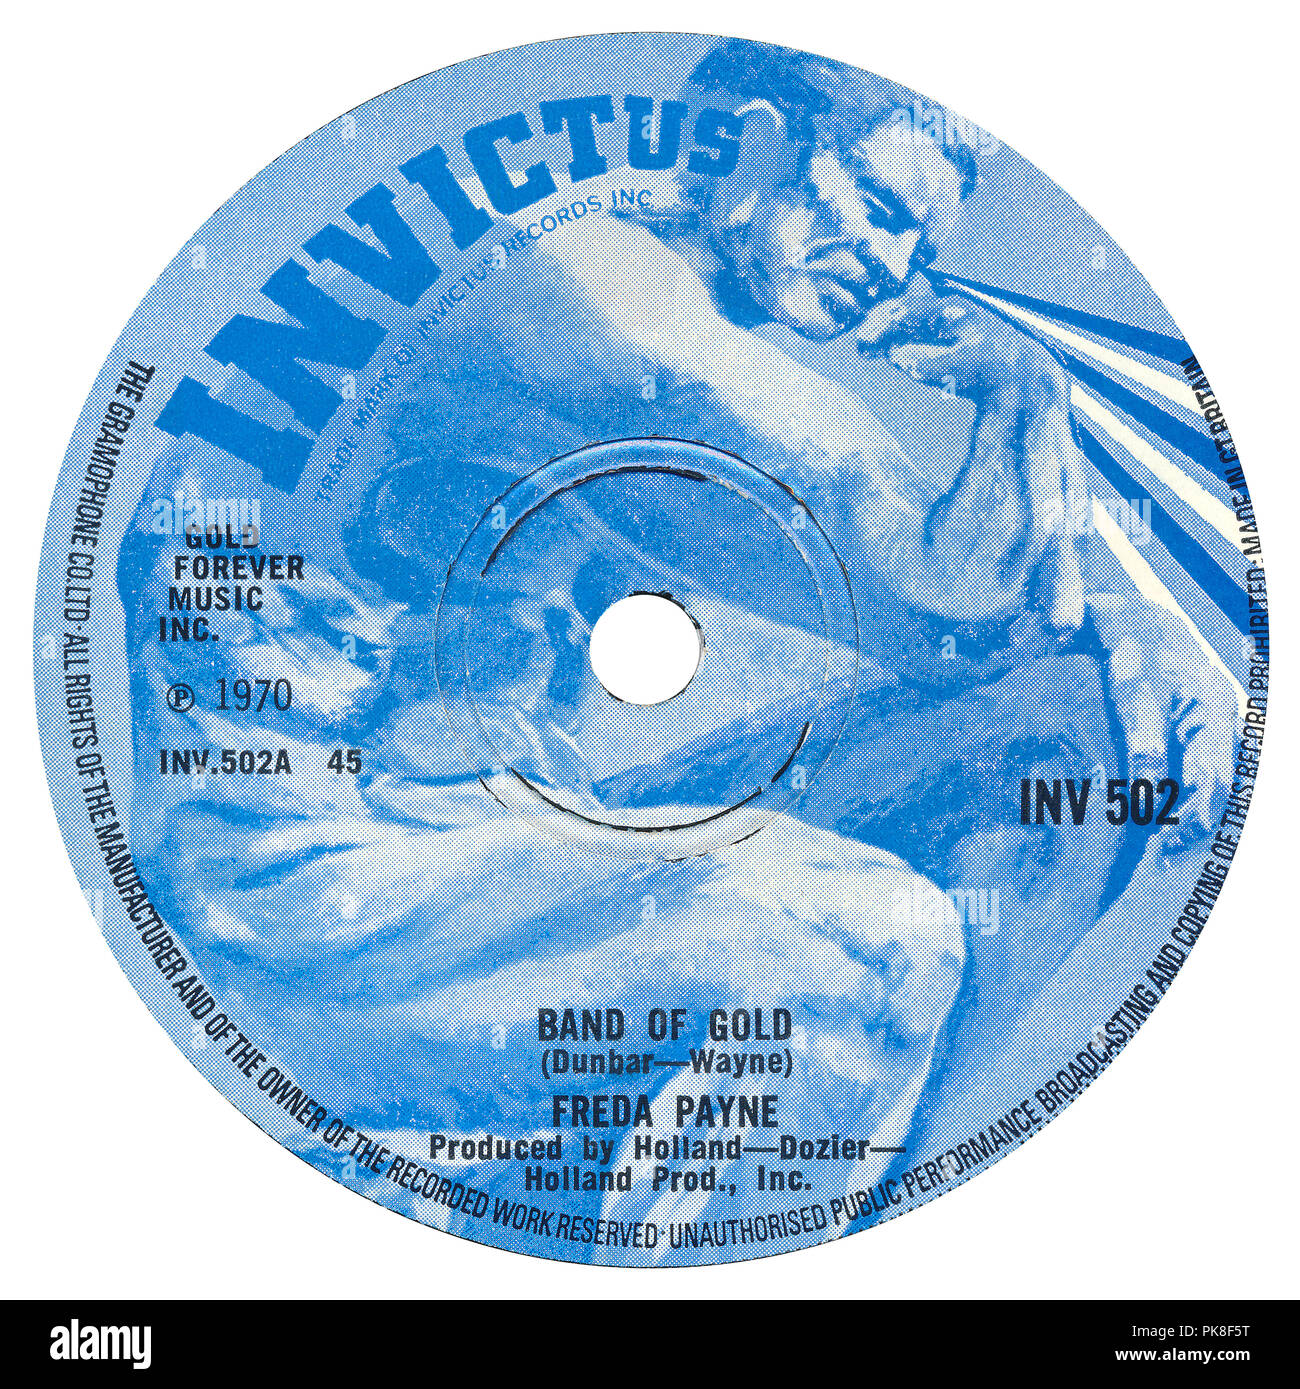 UK 45 tr/min 7' single de Band of Gold par Freda Payne sur le label Invictus de 1970. Écrit par Ron Dunbar et 'Edythe Wayne' (un pseudonyme de Holland-Dozier-Holland.) produit par Brian Holland, Lamont Dozier et Eddie Holland. Banque D'Images